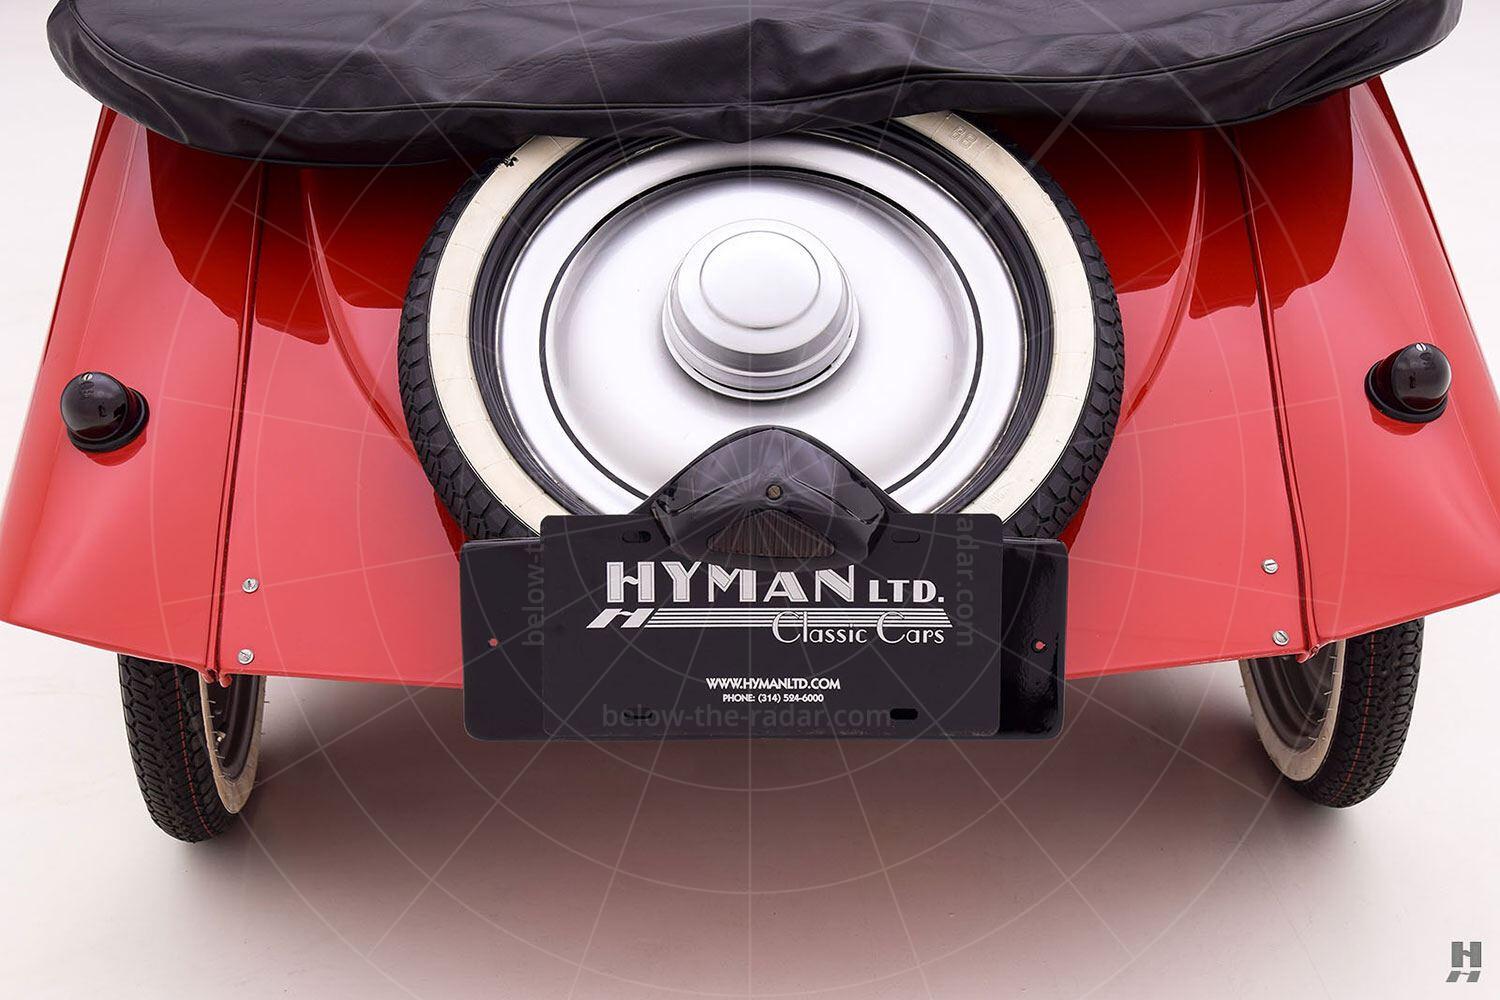 Kleinschnittger F125 Pic: Hyman Ltd | Kleinschnittger F125